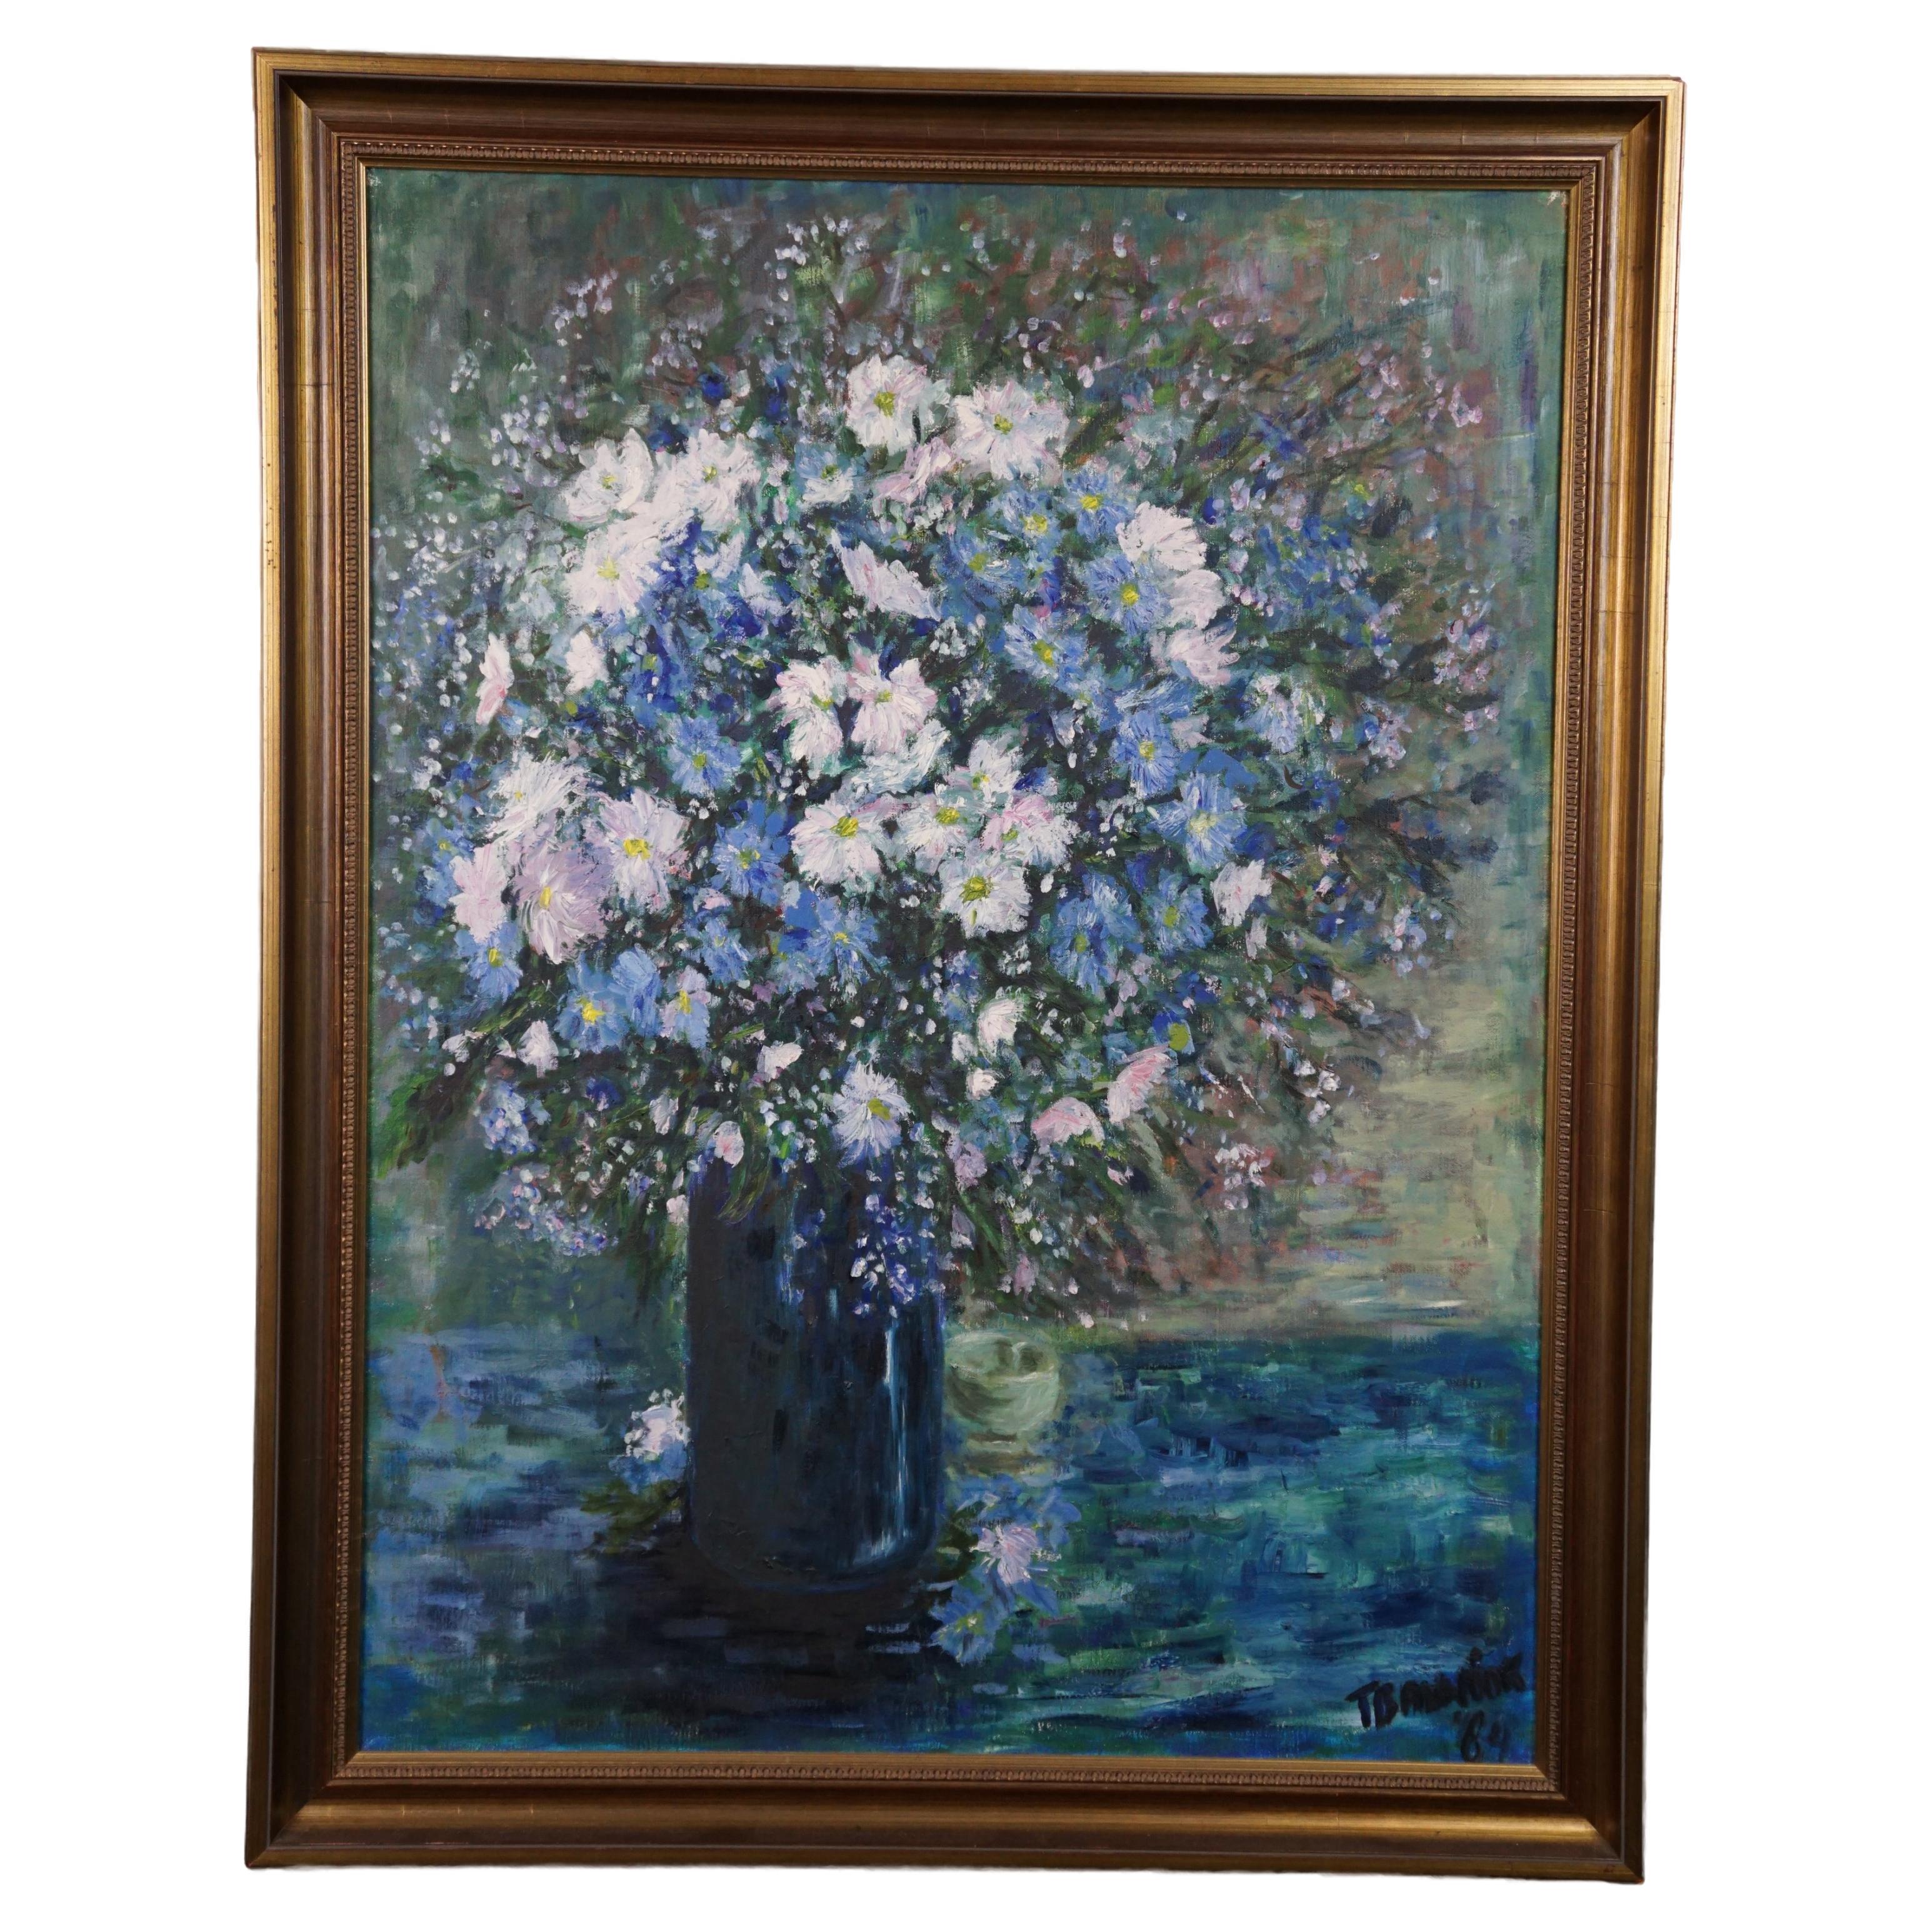 Whiting avec une nature morte d'un vase avec des fleurs bleues et blanches. 